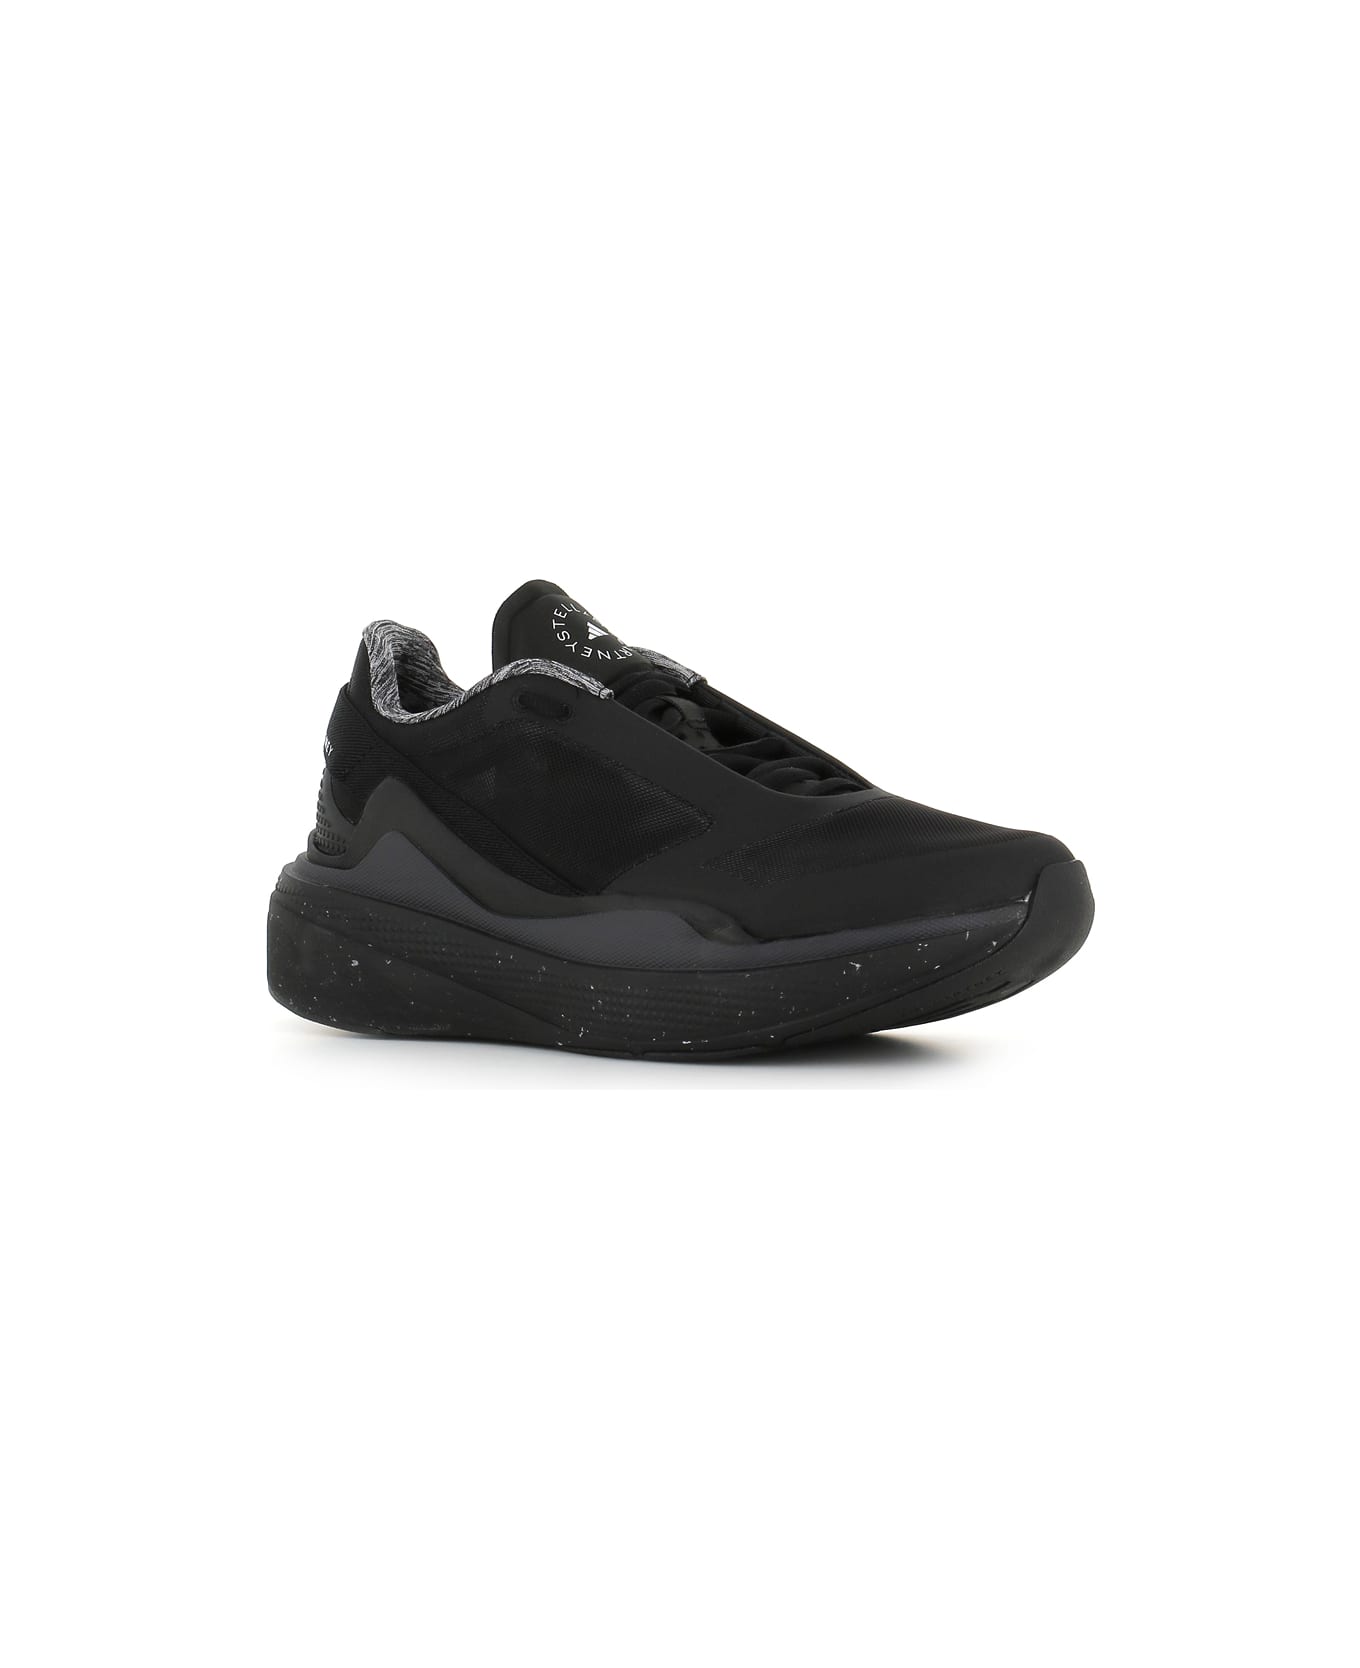 Adidas by Stella McCartney Sneaker Asmc Earthlight C - Black/Grey スニーカー